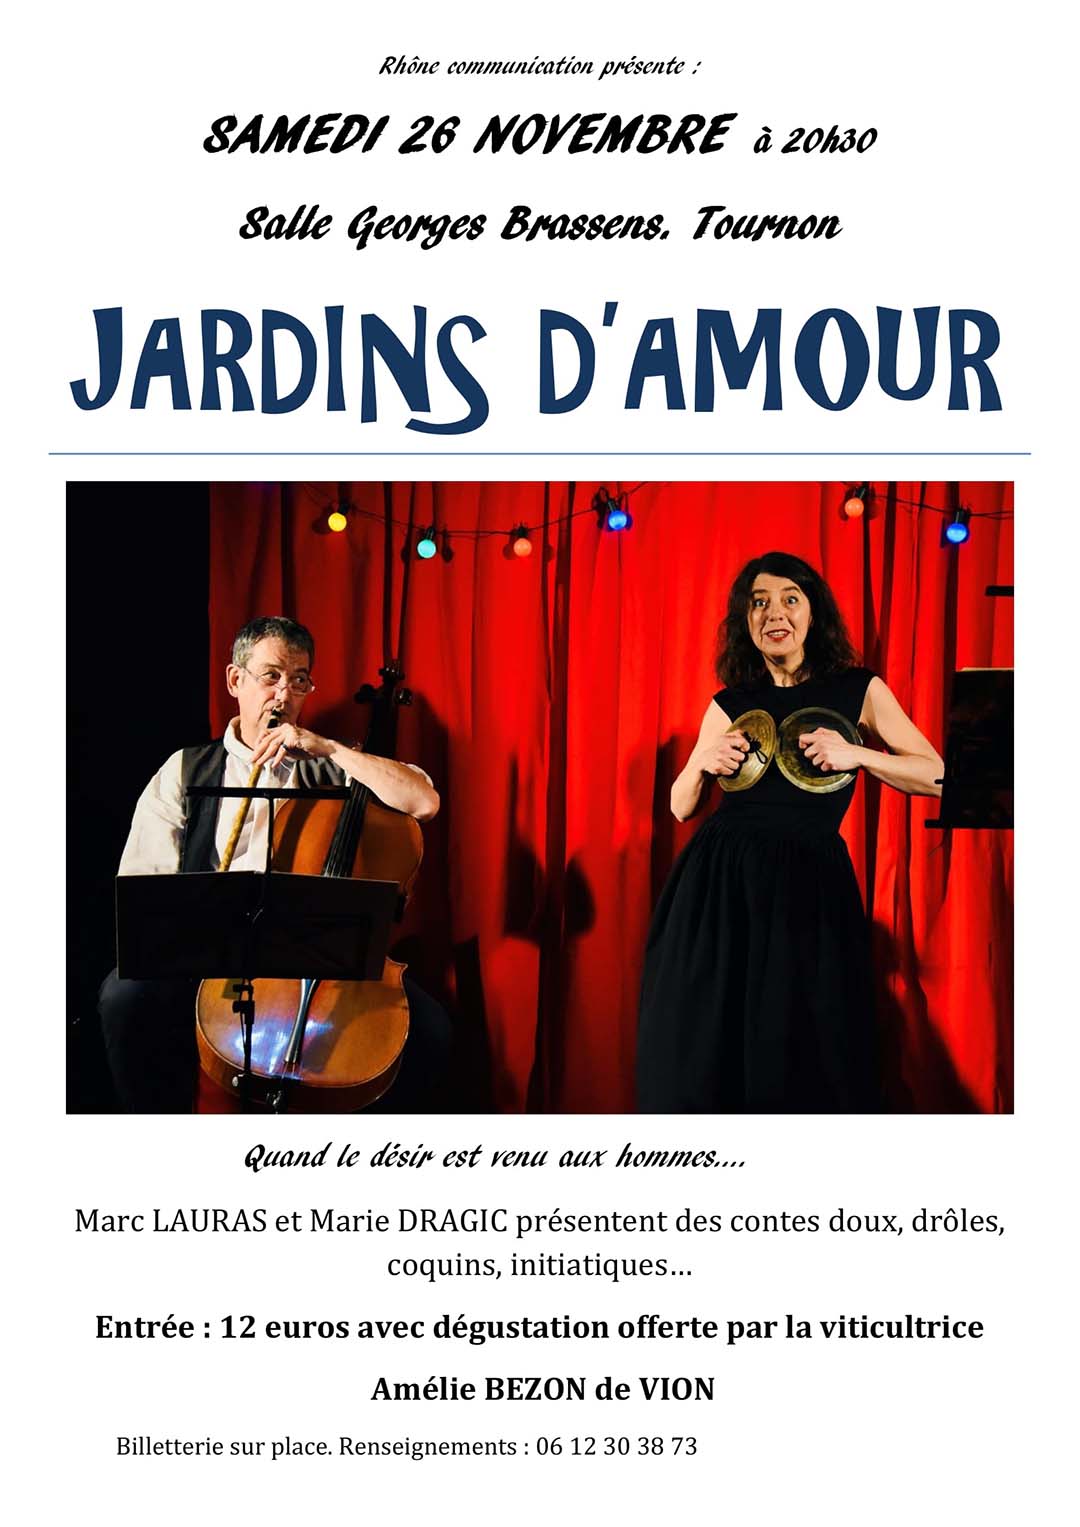 JARDINS D'AMOUR. Spectacle de contes adultes proposé par Rhône Communication. Samedi 26 novembre à 20h30. Salle Georges Brassens.